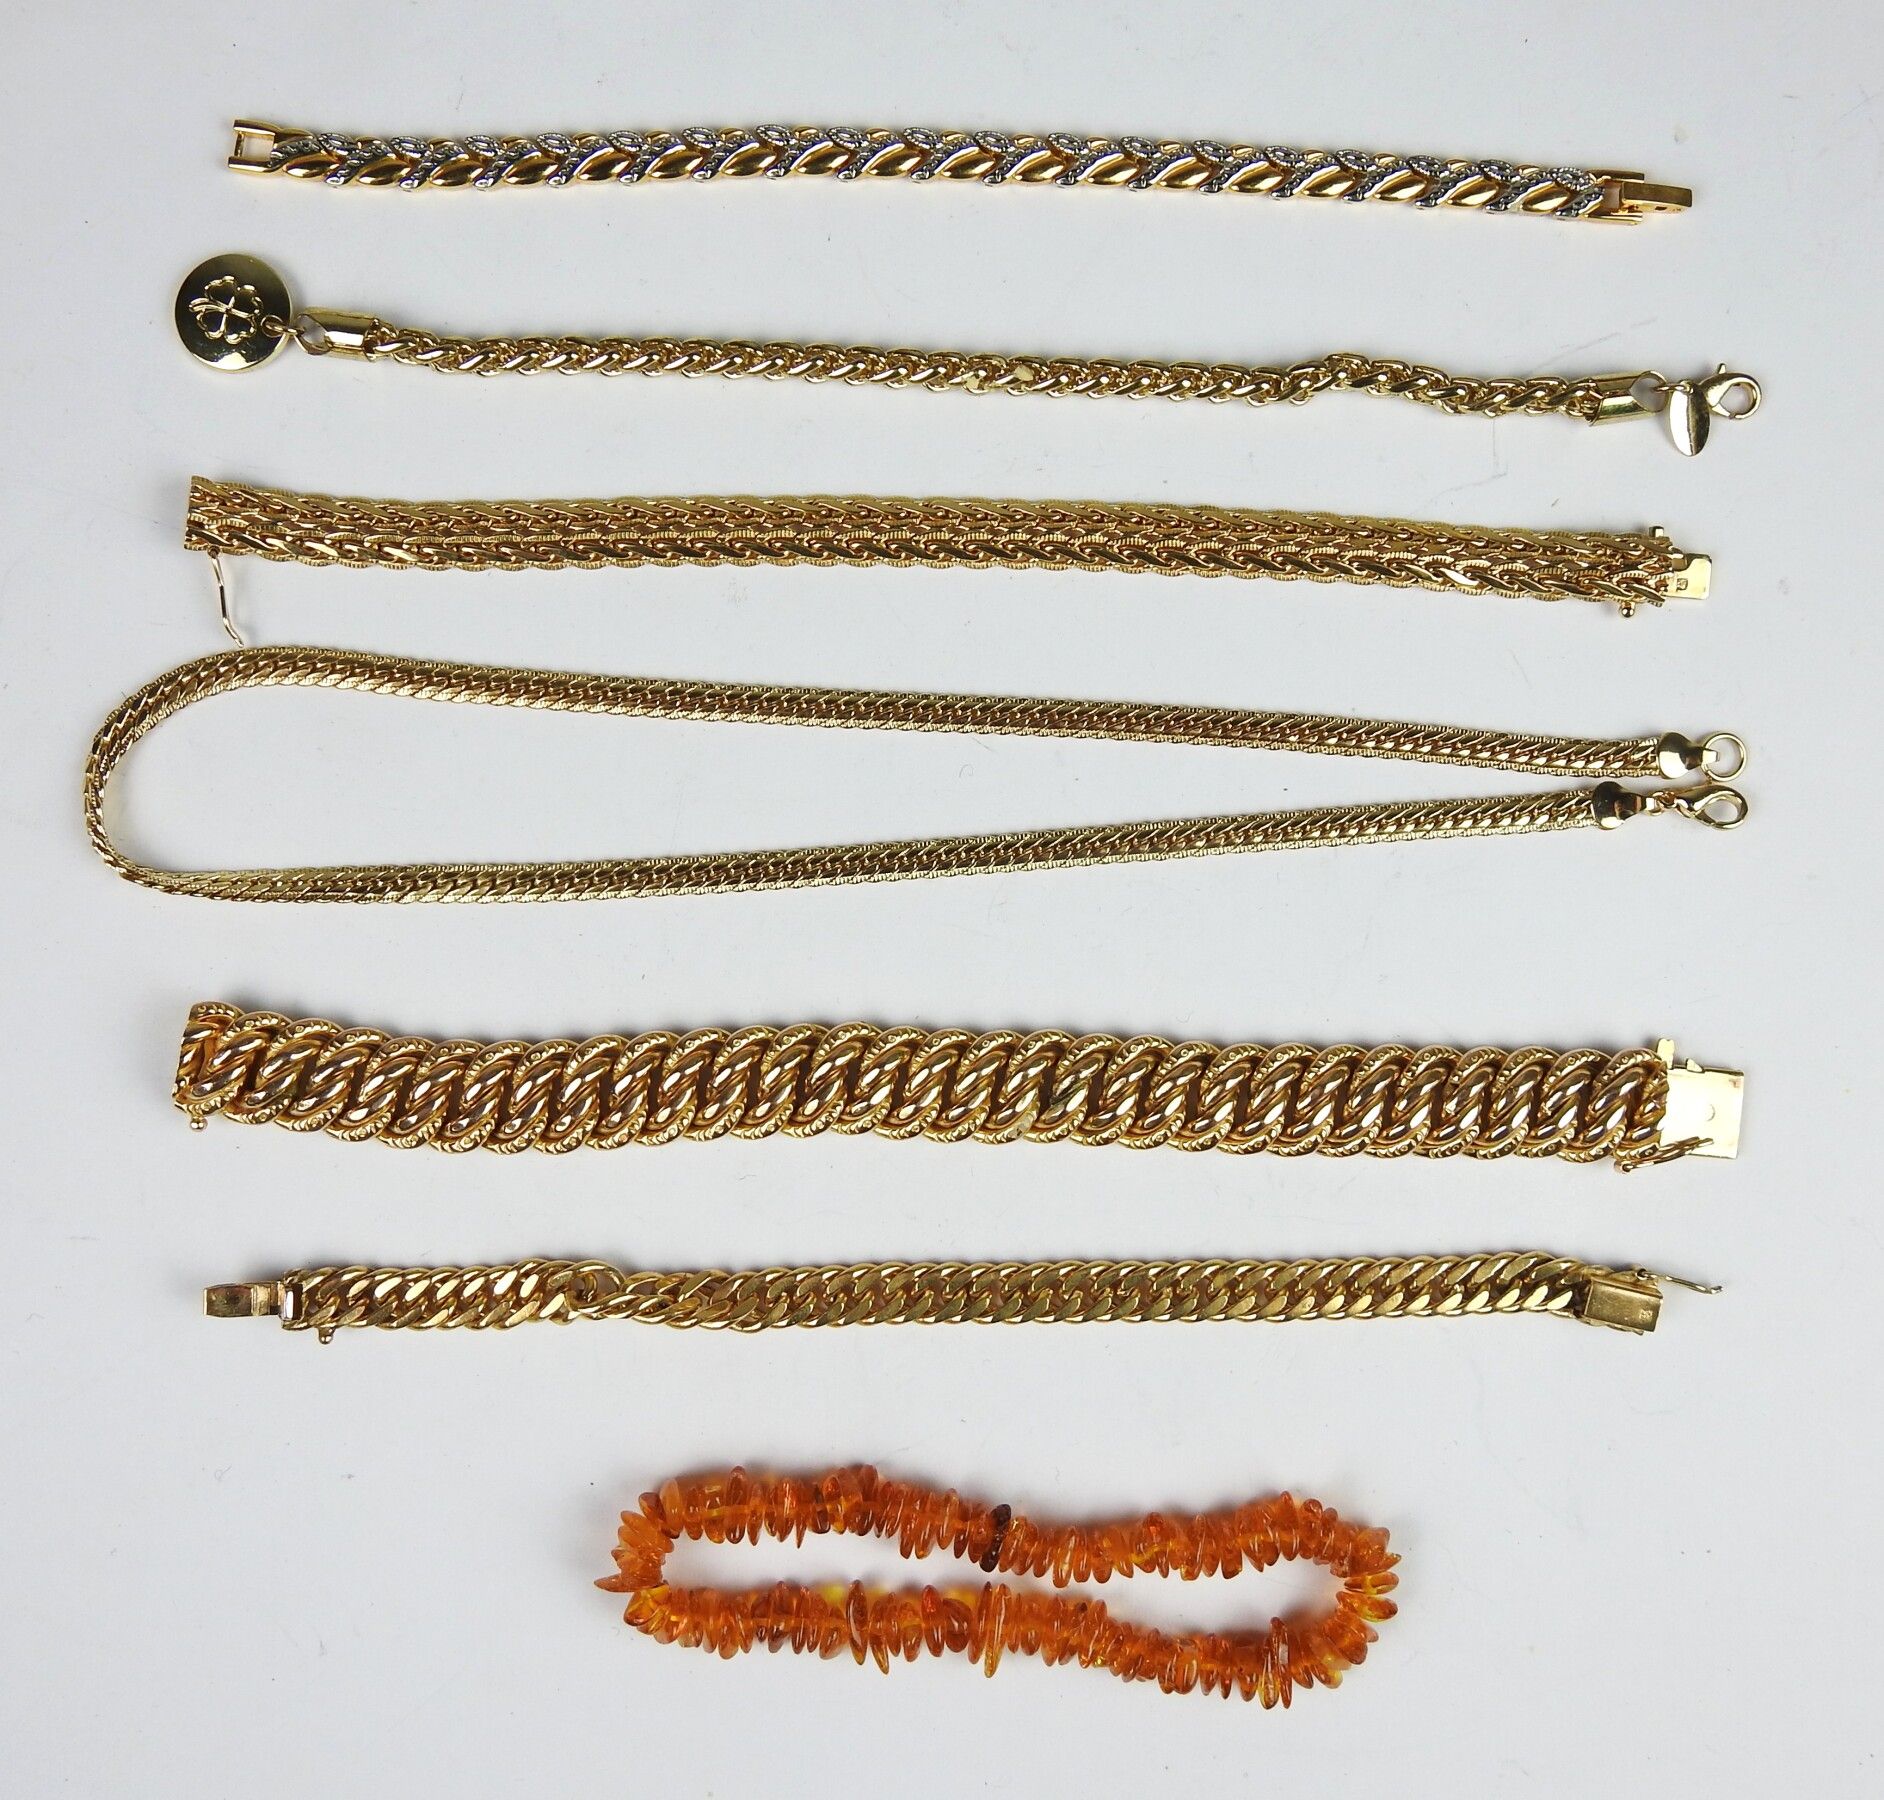 LOTE de 5 pulseras en oro y una pulsera bañada en oro, un collar bañado en oro y una pulsera de imitación de ámbar.